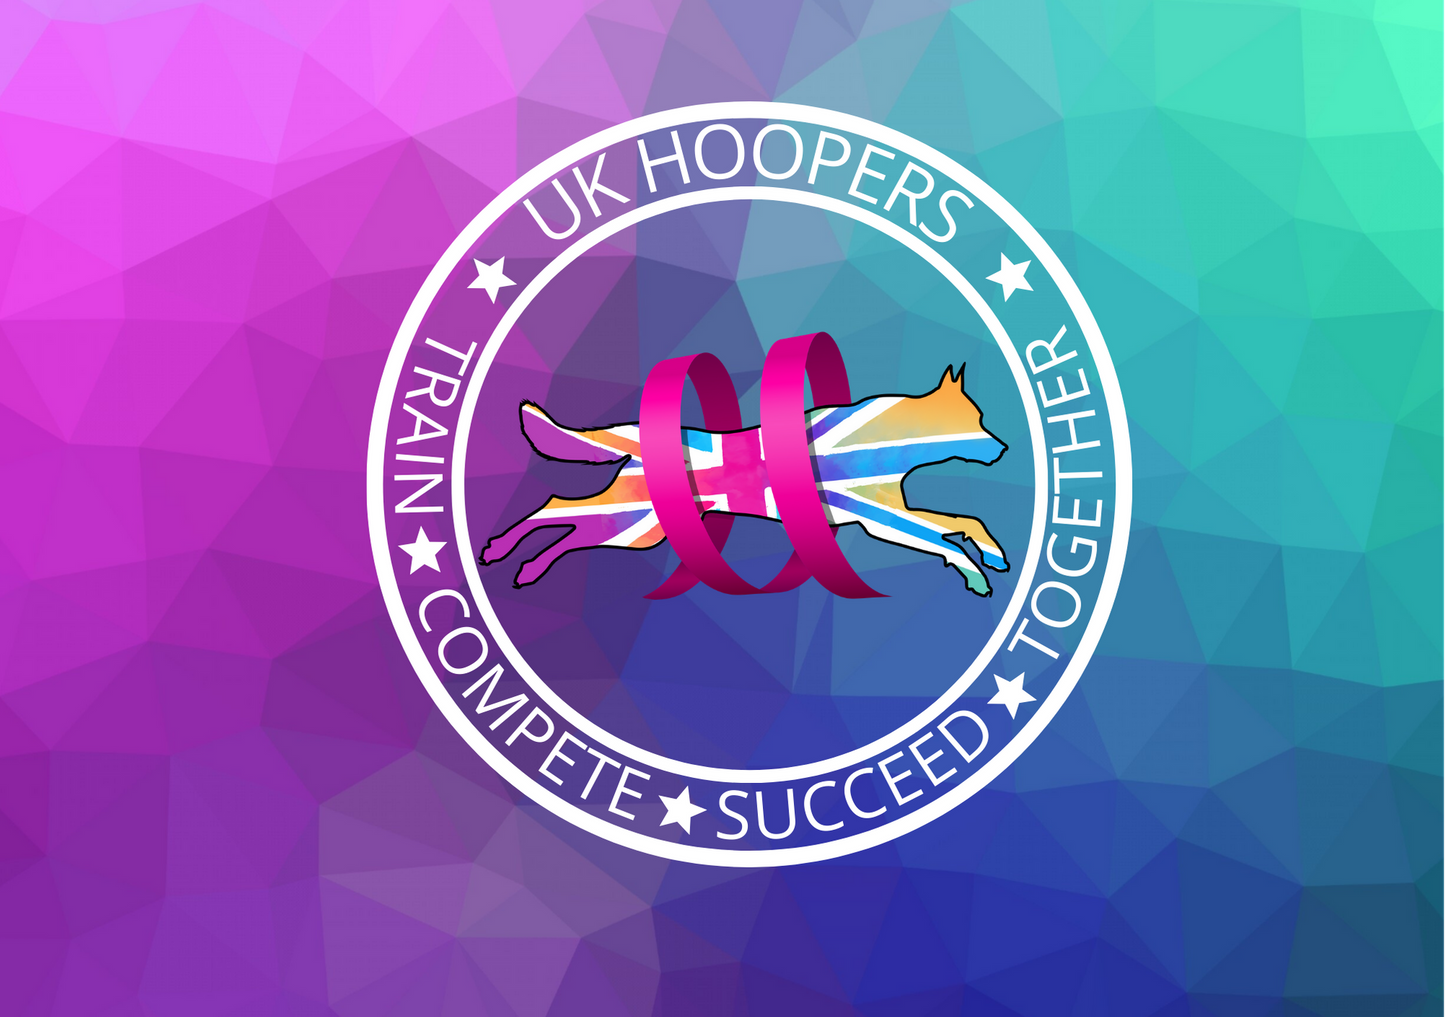 HooperStar Level 4 Award